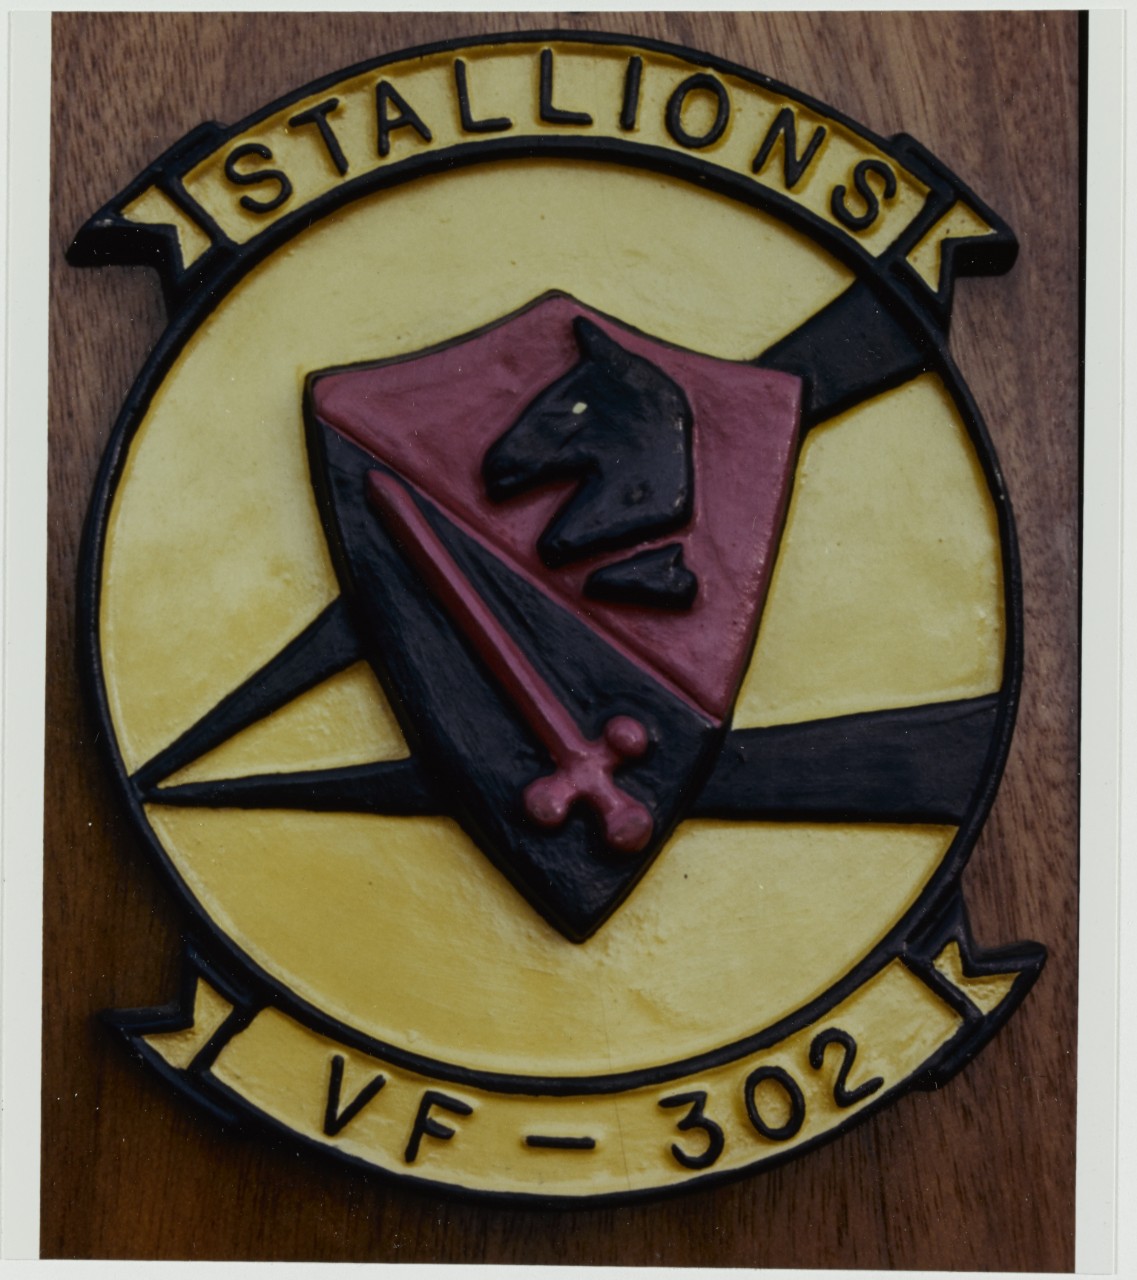 Insignia: Fighter Squadron 302. Stallions VF-302